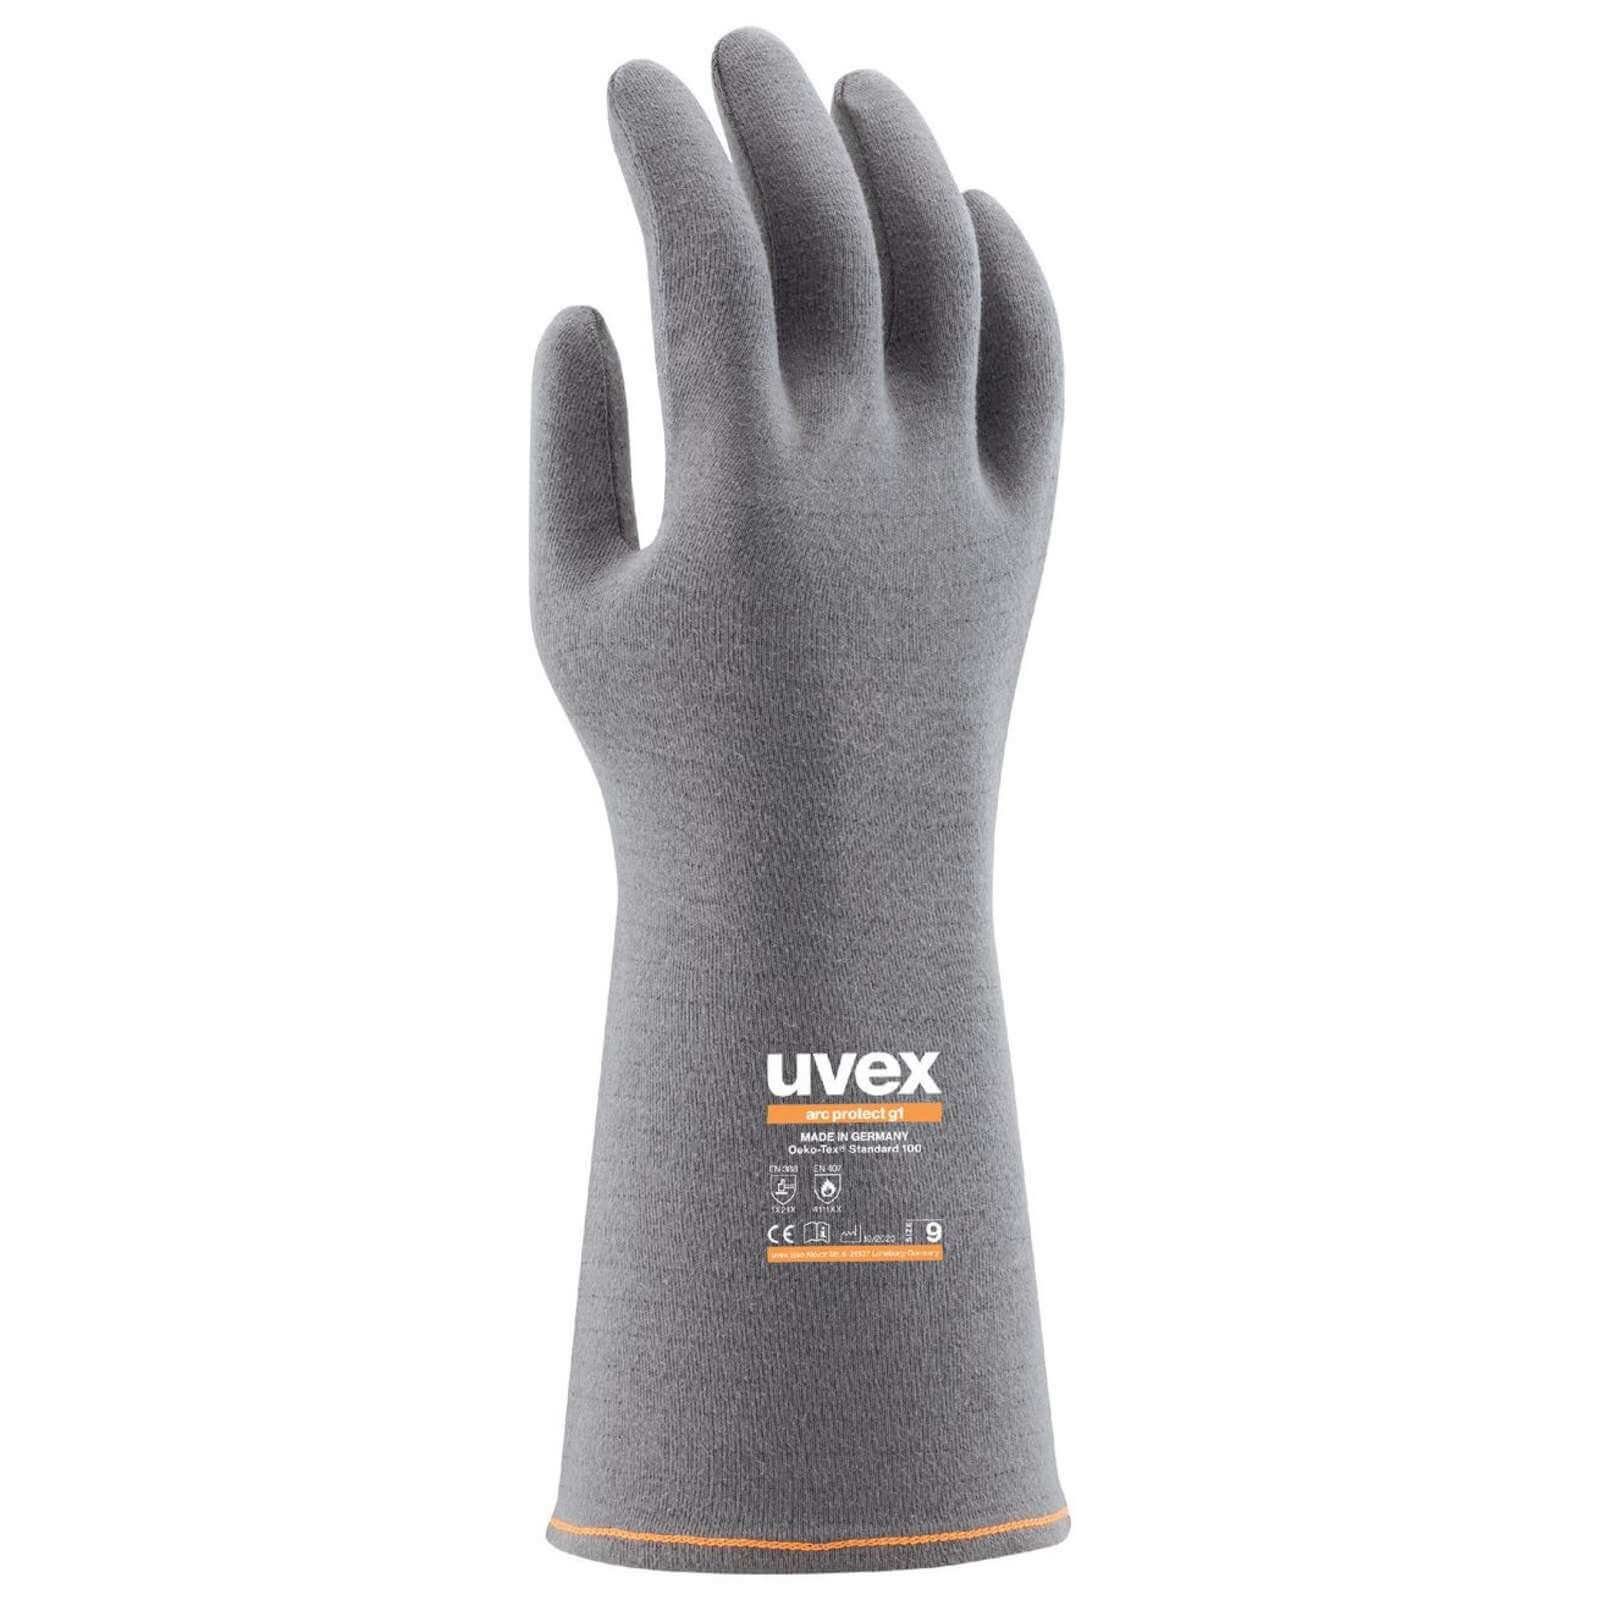 uvex arcprotect Uvex 60838 Störlichtbogenhandschuh Hitzeschutzhandschuhe Hitzeschutzhandschuhe g1